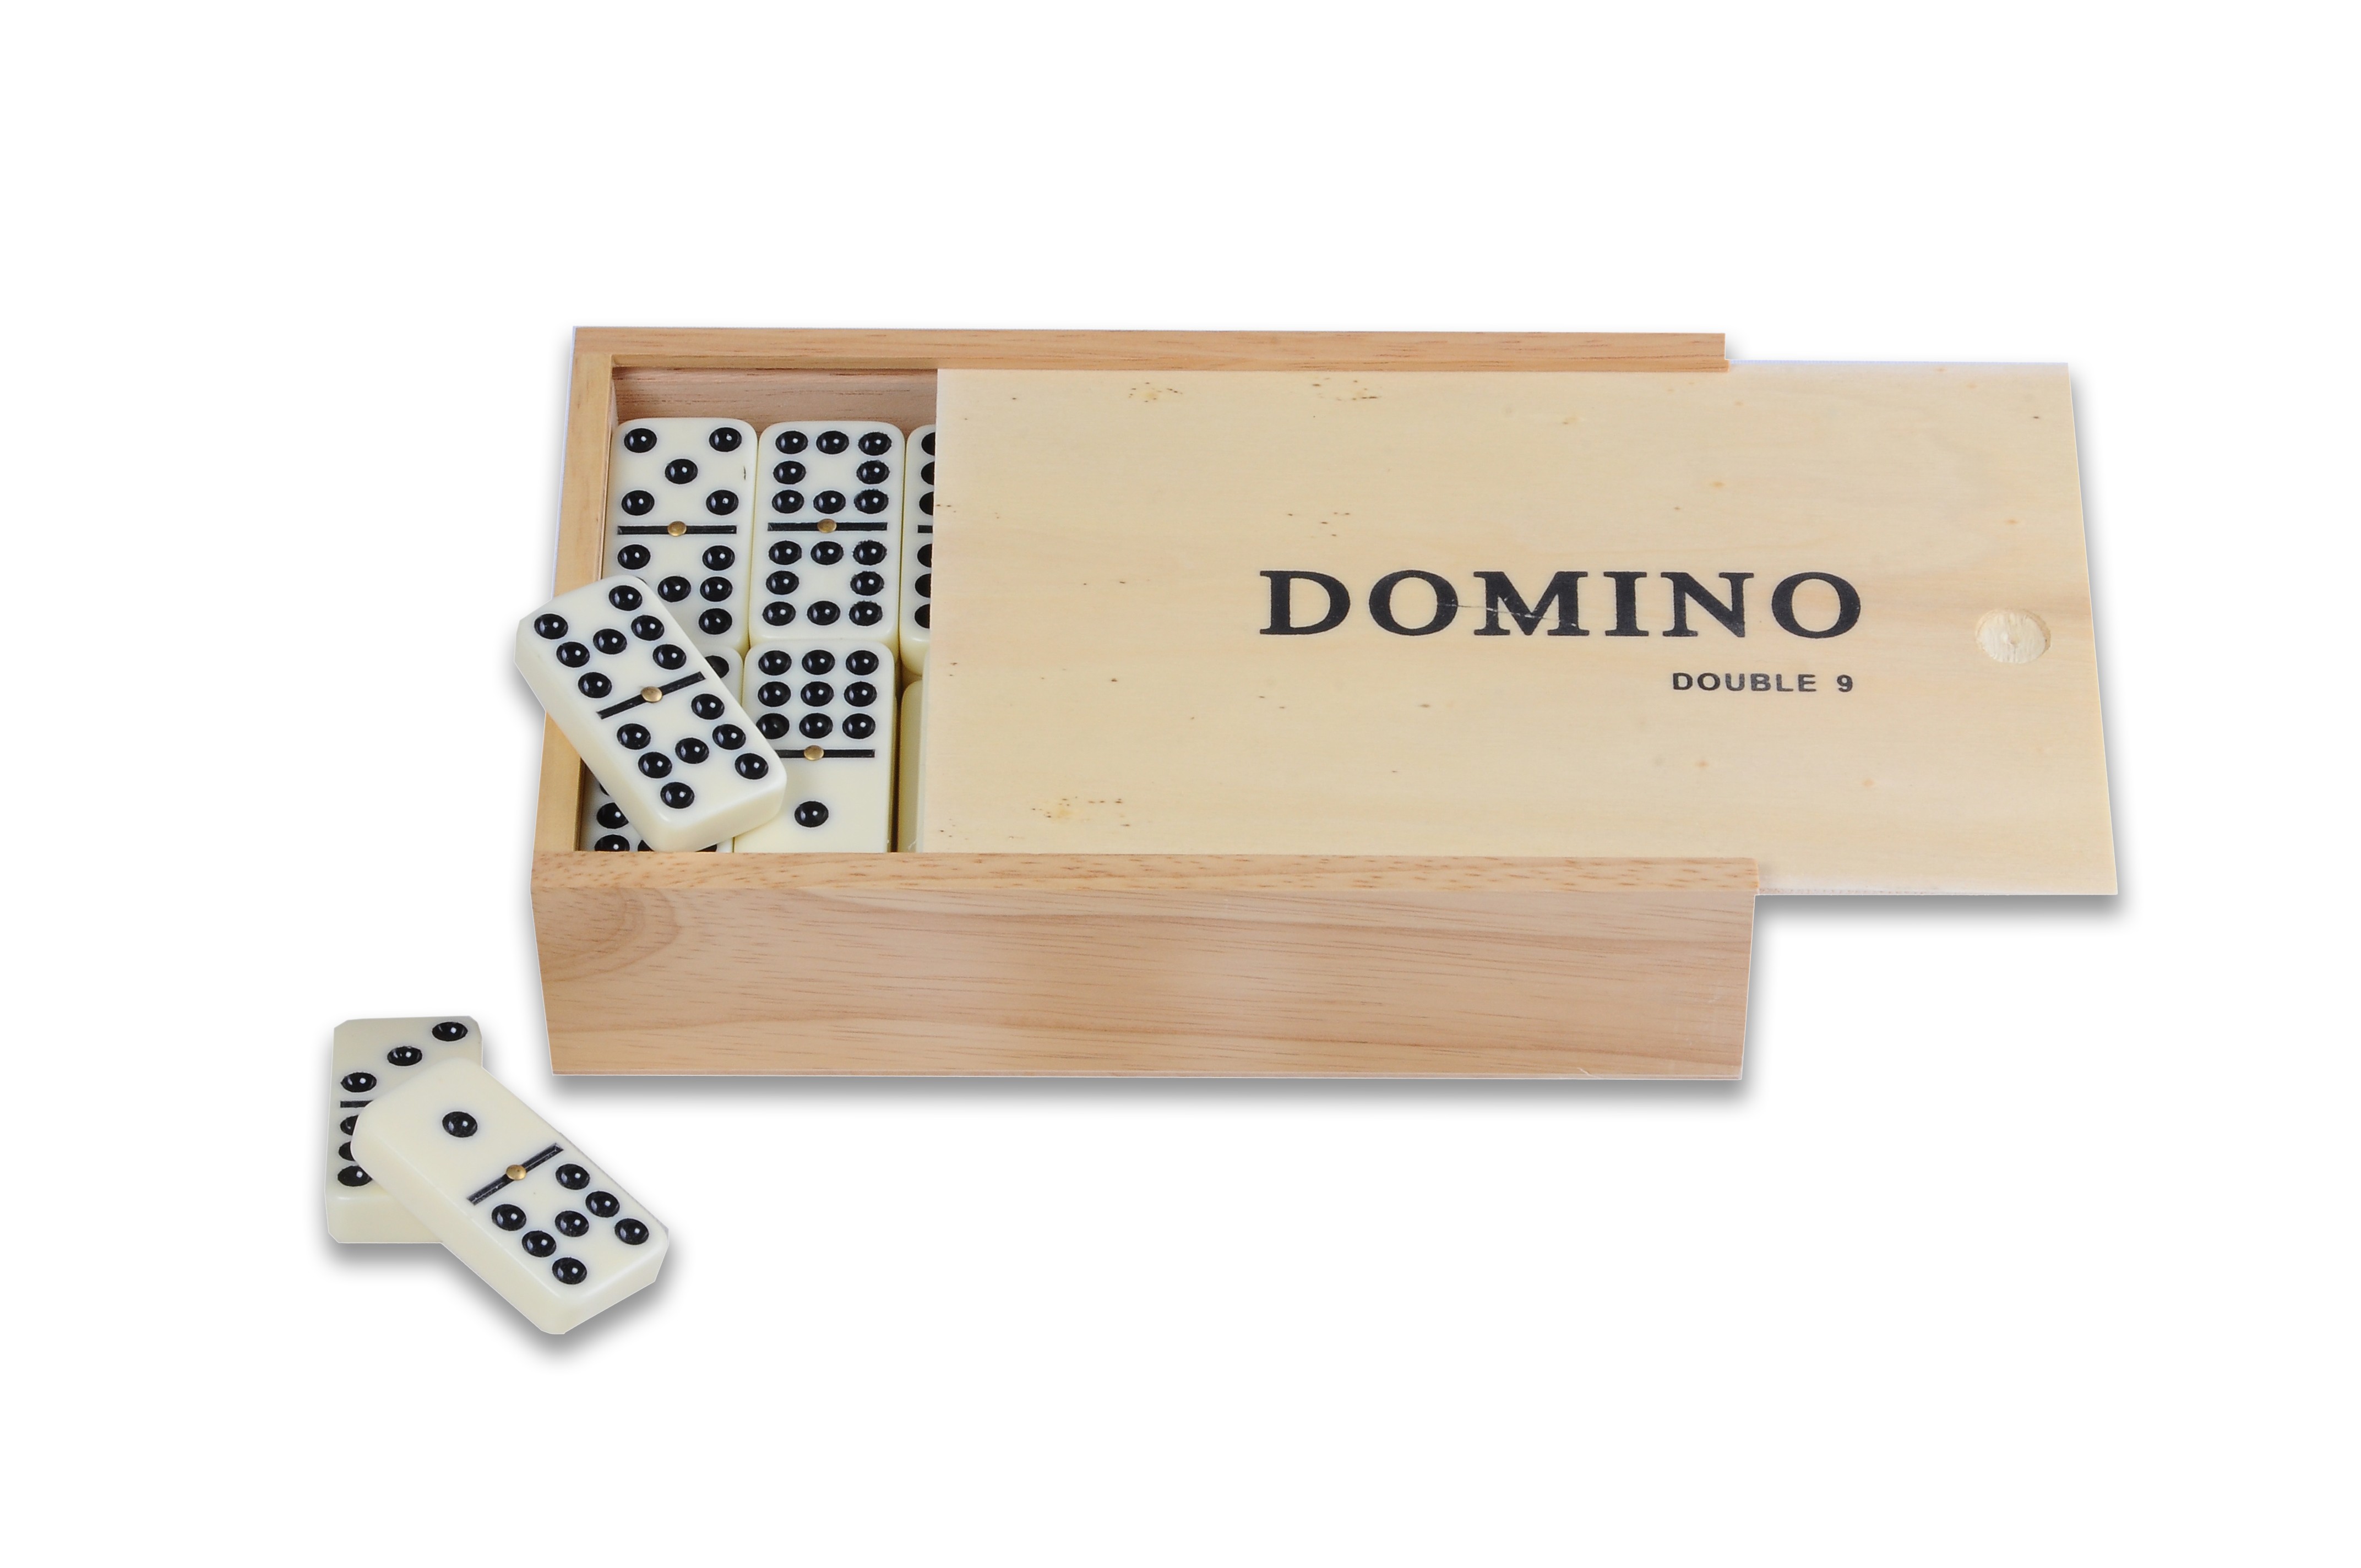 jeu de domino